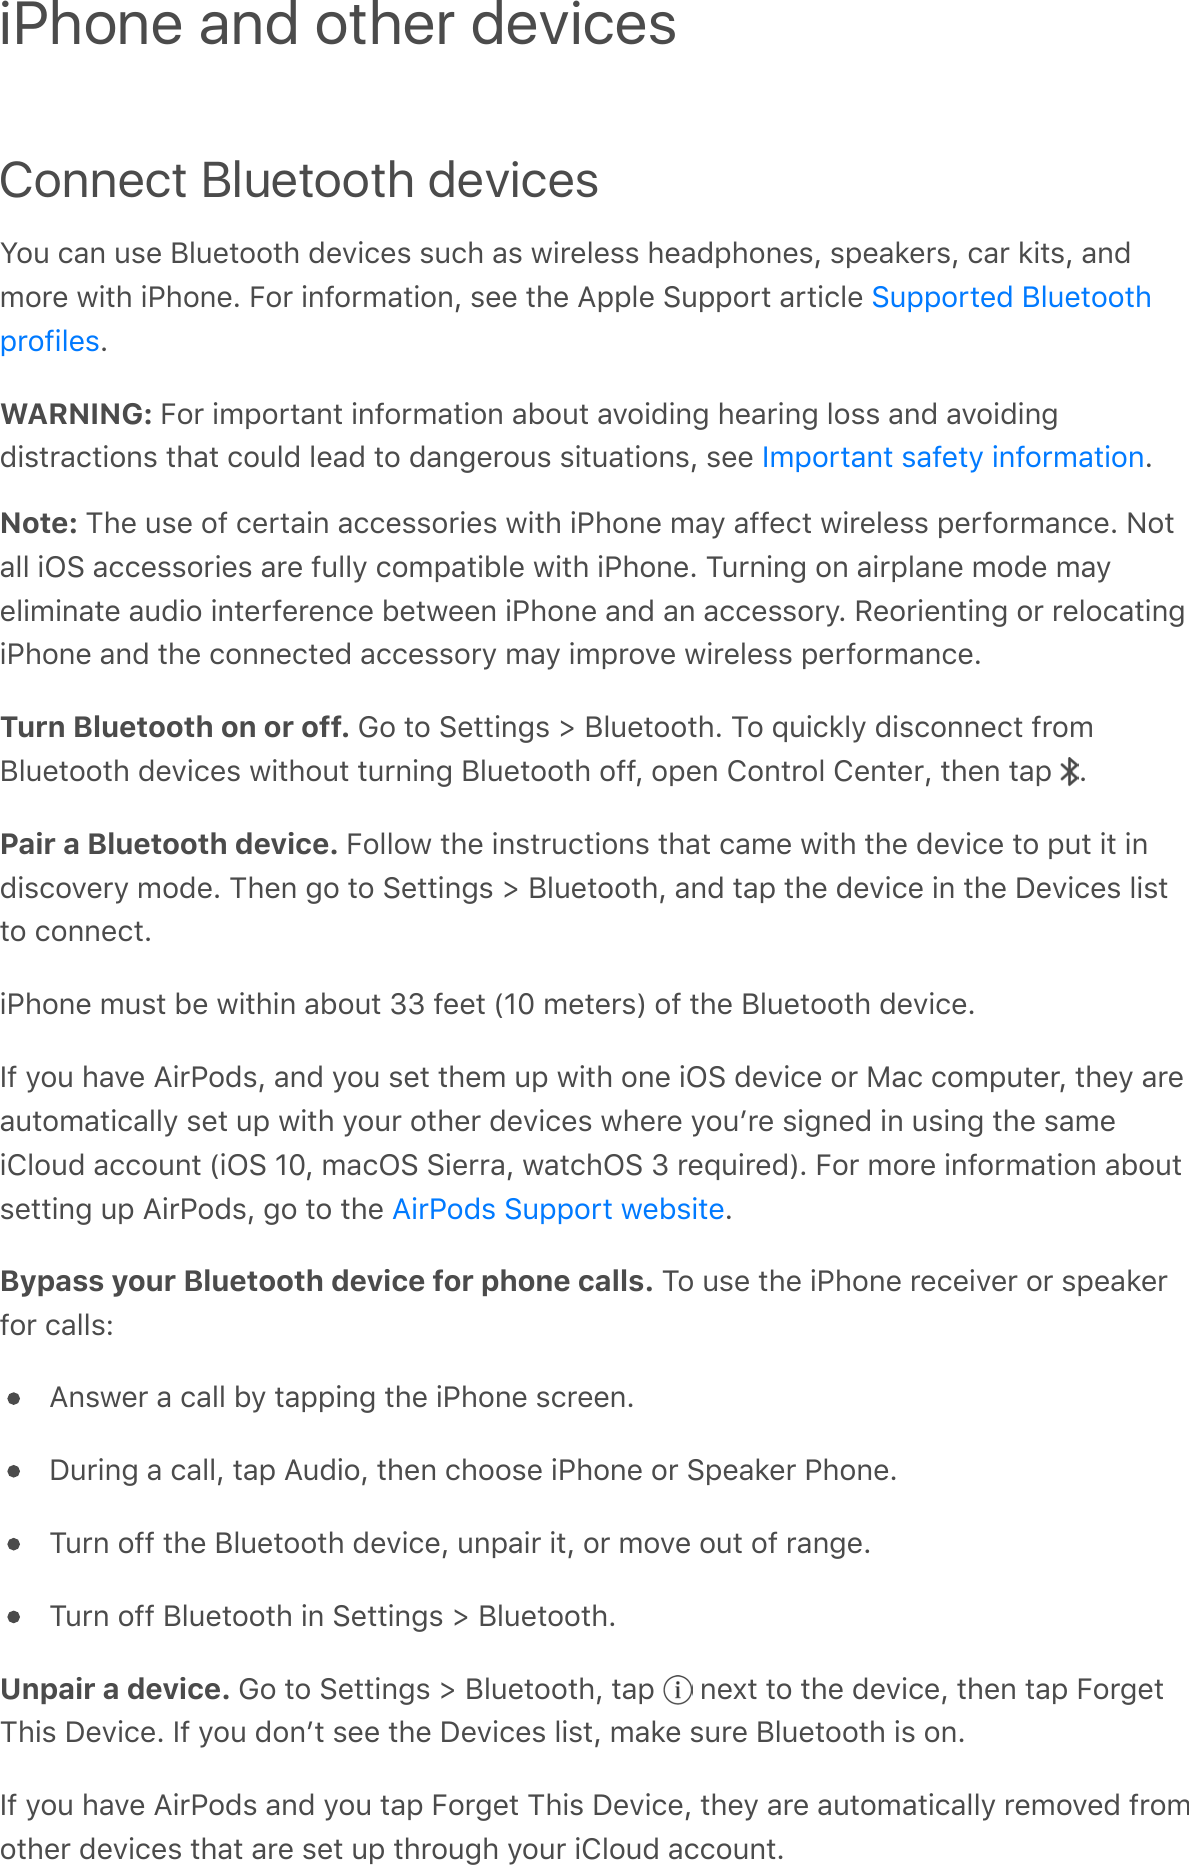 Connect Bluetooth devicesS$6&apos;/-%&apos;6,&amp;&apos;P.6&amp;*$$*#&apos;C&amp;A!/&amp;,&apos;,6/#&apos;-,&apos;3!0&amp;.&amp;,,&apos;#&amp;-C;#$%&amp;,Q&apos;,;&amp;-2&amp;0,Q&apos;/-0&apos;2!*,Q&apos;-%C9$0&amp;&apos;3!*#&apos;!&quot;#$%&amp;G&apos;5$0&apos;!%7$09-*!$%Q&apos;,&amp;&amp;&apos;*#&amp;&apos;B;;.&amp;&apos;:6;;$0*&apos;-0*!/.&amp;&apos;GWARNING: 5$0&apos;!9;$0*-%*&apos;!%7$09-*!$%&apos;-F$6*&apos;-A$!C!%4&apos;#&amp;-0!%4&apos;.$,,&apos;-%C&apos;-A$!C!%4C!,*0-/*!$%,&apos;*#-*&apos;/$6.C&apos;.&amp;-C&apos;*$&apos;C-%4&amp;0$6,&apos;,!*6-*!$%,Q&apos;,&amp;&amp;&apos; GNote: ?#&amp;&apos;6,&amp;&apos;$7&apos;/&amp;0*-!%&apos;-//&amp;,,$0!&amp;,&apos;3!*#&apos;!&quot;#$%&amp;&apos;9-&gt;&apos;-77&amp;/*&apos;3!0&amp;.&amp;,,&apos;;&amp;07$09-%/&amp;G&apos;E$*-..&apos;!N:&apos;-//&amp;,,$0!&amp;,&apos;-0&amp;&apos;76..&gt;&apos;/$9;-*!F.&amp;&apos;3!*#&apos;!&quot;#$%&amp;G&apos;?60%!%4&apos;$%&apos;-!0;.-%&amp;&apos;9$C&amp;&apos;9-&gt;&amp;.!9!%-*&amp;&apos;-6C!$&apos;!%*&amp;07&amp;0&amp;%/&amp;&apos;F&amp;*3&amp;&amp;%&apos;!&quot;#$%&amp;&apos;-%C&apos;-%&apos;-//&amp;,,$0&gt;G&apos;I&amp;$0!&amp;%*!%4&apos;$0&apos;0&amp;.$/-*!%4!&quot;#$%&amp;&apos;-%C&apos;*#&amp;&apos;/$%%&amp;/*&amp;C&apos;-//&amp;,,$0&gt;&apos;9-&gt;&apos;!9;0$A&amp;&apos;3!0&amp;.&amp;,,&apos;;&amp;07$09-%/&amp;GTurn Bluetooth on or off. M$&apos;*$&apos;:&amp;**!%4,&apos;e&apos;P.6&amp;*$$*#G&apos;?$&apos;d6!/2.&gt;&apos;C!,/$%%&amp;/*&apos;70$9P.6&amp;*$$*#&apos;C&amp;A!/&amp;,&apos;3!*#$6*&apos;*60%!%4&apos;P.6&amp;*$$*#&apos;$77Q&apos;$;&amp;%&apos;T$%*0$.&apos;T&amp;%*&amp;0Q&apos;*#&amp;%&apos;*-;&apos; GPair a Bluetooth device. 5$..$3&apos;*#&amp;&apos;!%,*06/*!$%,&apos;*#-*&apos;/-9&amp;&apos;3!*#&apos;*#&amp;&apos;C&amp;A!/&amp;&apos;*$&apos;;6*&apos;!*&apos;!%C!,/$A&amp;0&gt;&apos;9$C&amp;G&apos;?#&amp;%&apos;4$&apos;*$&apos;:&amp;**!%4,&apos;e&apos;P.6&amp;*$$*#Q&apos;-%C&apos;*-;&apos;*#&amp;&apos;C&amp;A!/&amp;&apos;!%&apos;*#&amp;&apos;&lt;&amp;A!/&amp;,&apos;.!,**$&apos;/$%%&amp;/*G!&quot;#$%&amp;&apos;96,*&apos;F&amp;&apos;3!*#!%&apos;-F$6*&apos;ff&apos;7&amp;&amp;*&apos;\Oo&apos;9&amp;*&amp;0,]&apos;$7&apos;*#&amp;&apos;P.6&amp;*$$*#&apos;C&amp;A!/&amp;G)7&apos;&gt;$6&apos;#-A&amp;&apos;B!0&quot;$C,Q&apos;-%C&apos;&gt;$6&apos;,&amp;*&apos;*#&amp;9&apos;6;&apos;3!*#&apos;$%&amp;&apos;!N:&apos;C&amp;A!/&amp;&apos;$0&apos;H-/&apos;/$9;6*&amp;0Q&apos;*#&amp;&gt;&apos;-0&amp;-6*$9-*!/-..&gt;&apos;,&amp;*&apos;6;&apos;3!*#&apos;&gt;$60&apos;$*#&amp;0&apos;C&amp;A!/&amp;,&apos;3#&amp;0&amp;&apos;&gt;$6+0&amp;&apos;,!4%&amp;C&apos;!%&apos;6,!%4&apos;*#&amp;&apos;,-9&amp;!T.$6C&apos;-//$6%*&apos;\!N:&apos;OoQ&apos;9-/N:&apos;:!&amp;00-Q&apos;3-*/#N:&apos;f&apos;0&amp;d6!0&amp;C]G&apos;5$0&apos;9$0&amp;&apos;!%7$09-*!$%&apos;-F$6*,&amp;**!%4&apos;6;&apos;B!0&quot;$C,Q&apos;4$&apos;*$&apos;*#&amp;&apos; GBypass your Bluetooth device for phone calls. ?$&apos;6,&amp;&apos;*#&amp;&apos;!&quot;#$%&amp;&apos;0&amp;/&amp;!A&amp;0&apos;$0&apos;,;&amp;-2&amp;07$0&apos;/-..,RB%,3&amp;0&apos;-&apos;/-..&apos;F&gt;&apos;*-;;!%4&apos;*#&amp;&apos;!&quot;#$%&amp;&apos;,/0&amp;&amp;%G&lt;60!%4&apos;-&apos;/-..Q&apos;*-;&apos;B6C!$Q&apos;*#&amp;%&apos;/#$$,&amp;&apos;!&quot;#$%&amp;&apos;$0&apos;:;&amp;-2&amp;0&apos;&quot;#$%&amp;G?60%&apos;$77&apos;*#&amp;&apos;P.6&amp;*$$*#&apos;C&amp;A!/&amp;Q&apos;6%;-!0&apos;!*Q&apos;$0&apos;9$A&amp;&apos;$6*&apos;$7&apos;0-%4&amp;G?60%&apos;$77&apos;P.6&amp;*$$*#&apos;!%&apos;:&amp;**!%4,&apos;e&apos;P.6&amp;*$$*#GUnpair a device. M$&apos;*$&apos;:&amp;**!%4,&apos;e&apos;P.6&amp;*$$*#Q&apos;*-;&apos; &apos;%&amp;^*&apos;*$&apos;*#&amp;&apos;C&amp;A!/&amp;Q&apos;*#&amp;%&apos;*-;&apos;5$04&amp;*?#!,&apos;&lt;&amp;A!/&amp;G&apos;)7&apos;&gt;$6&apos;C$%+*&apos;,&amp;&amp;&apos;*#&amp;&apos;&lt;&amp;A!/&amp;,&apos;.!,*Q&apos;9-2&amp;&apos;,60&amp;&apos;P.6&amp;*$$*#&apos;!,&apos;$%G)7&apos;&gt;$6&apos;#-A&amp;&apos;B!0&quot;$C,&apos;-%C&apos;&gt;$6&apos;*-;&apos;5$04&amp;*&apos;?#!,&apos;&lt;&amp;A!/&amp;Q&apos;*#&amp;&gt;&apos;-0&amp;&apos;-6*$9-*!/-..&gt;&apos;0&amp;9$A&amp;C&apos;70$9$*#&amp;0&apos;C&amp;A!/&amp;,&apos;*#-*&apos;-0&amp;&apos;,&amp;*&apos;6;&apos;*#0$64#&apos;&gt;$60&apos;!T.$6C&apos;-//$6%*GiPhone and other devices:6;;$0*&amp;C&apos;P.6&amp;*$$*#;0$7!.&amp;,)9;$0*-%*&apos;,-7&amp;*&gt;&apos;!%7$09-*!$%B!0&quot;$C,&apos;:6;;$0*&apos;3&amp;F,!*&amp;